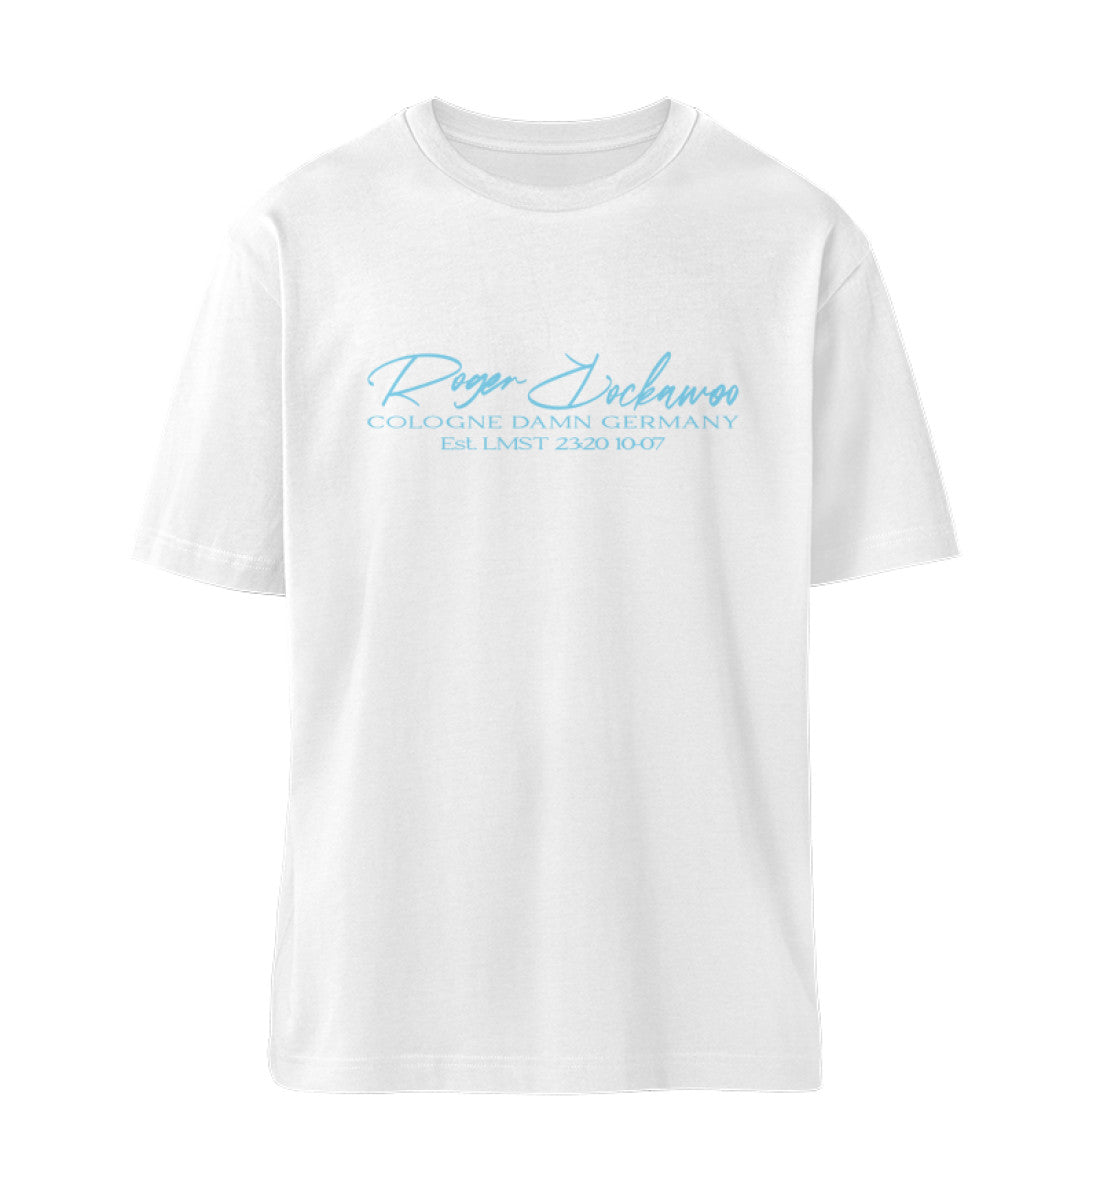 Weißes T-Shirt Unisex Relaxed Fit für Frauen und Männer bedruckt mit dem Design der Roger Rockawoo Kollektion surf shredding community